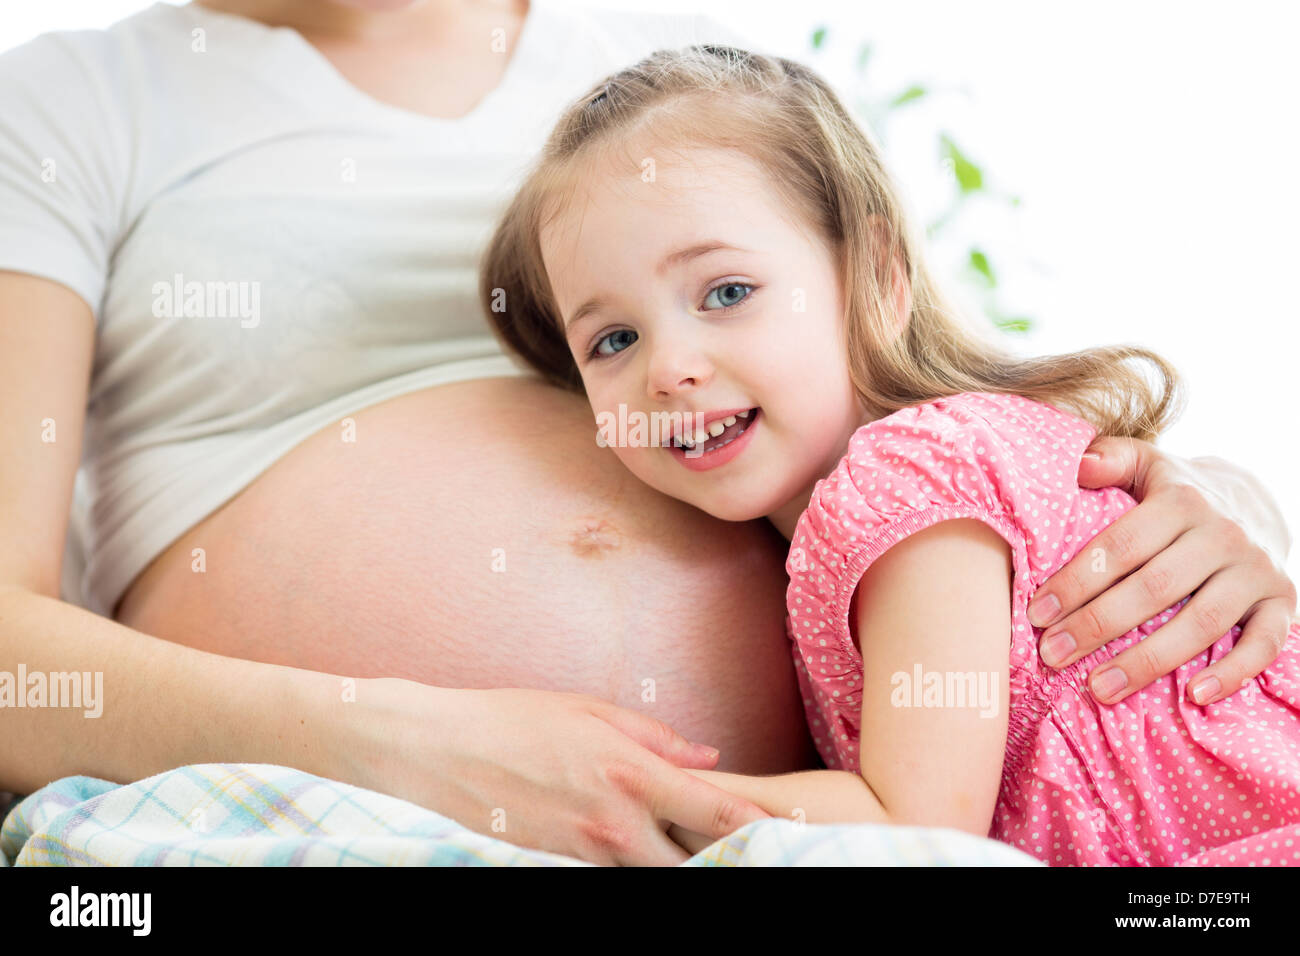 glückliches Kind Mädchen umarmt Bauch der schwangeren Mutter Stockfoto